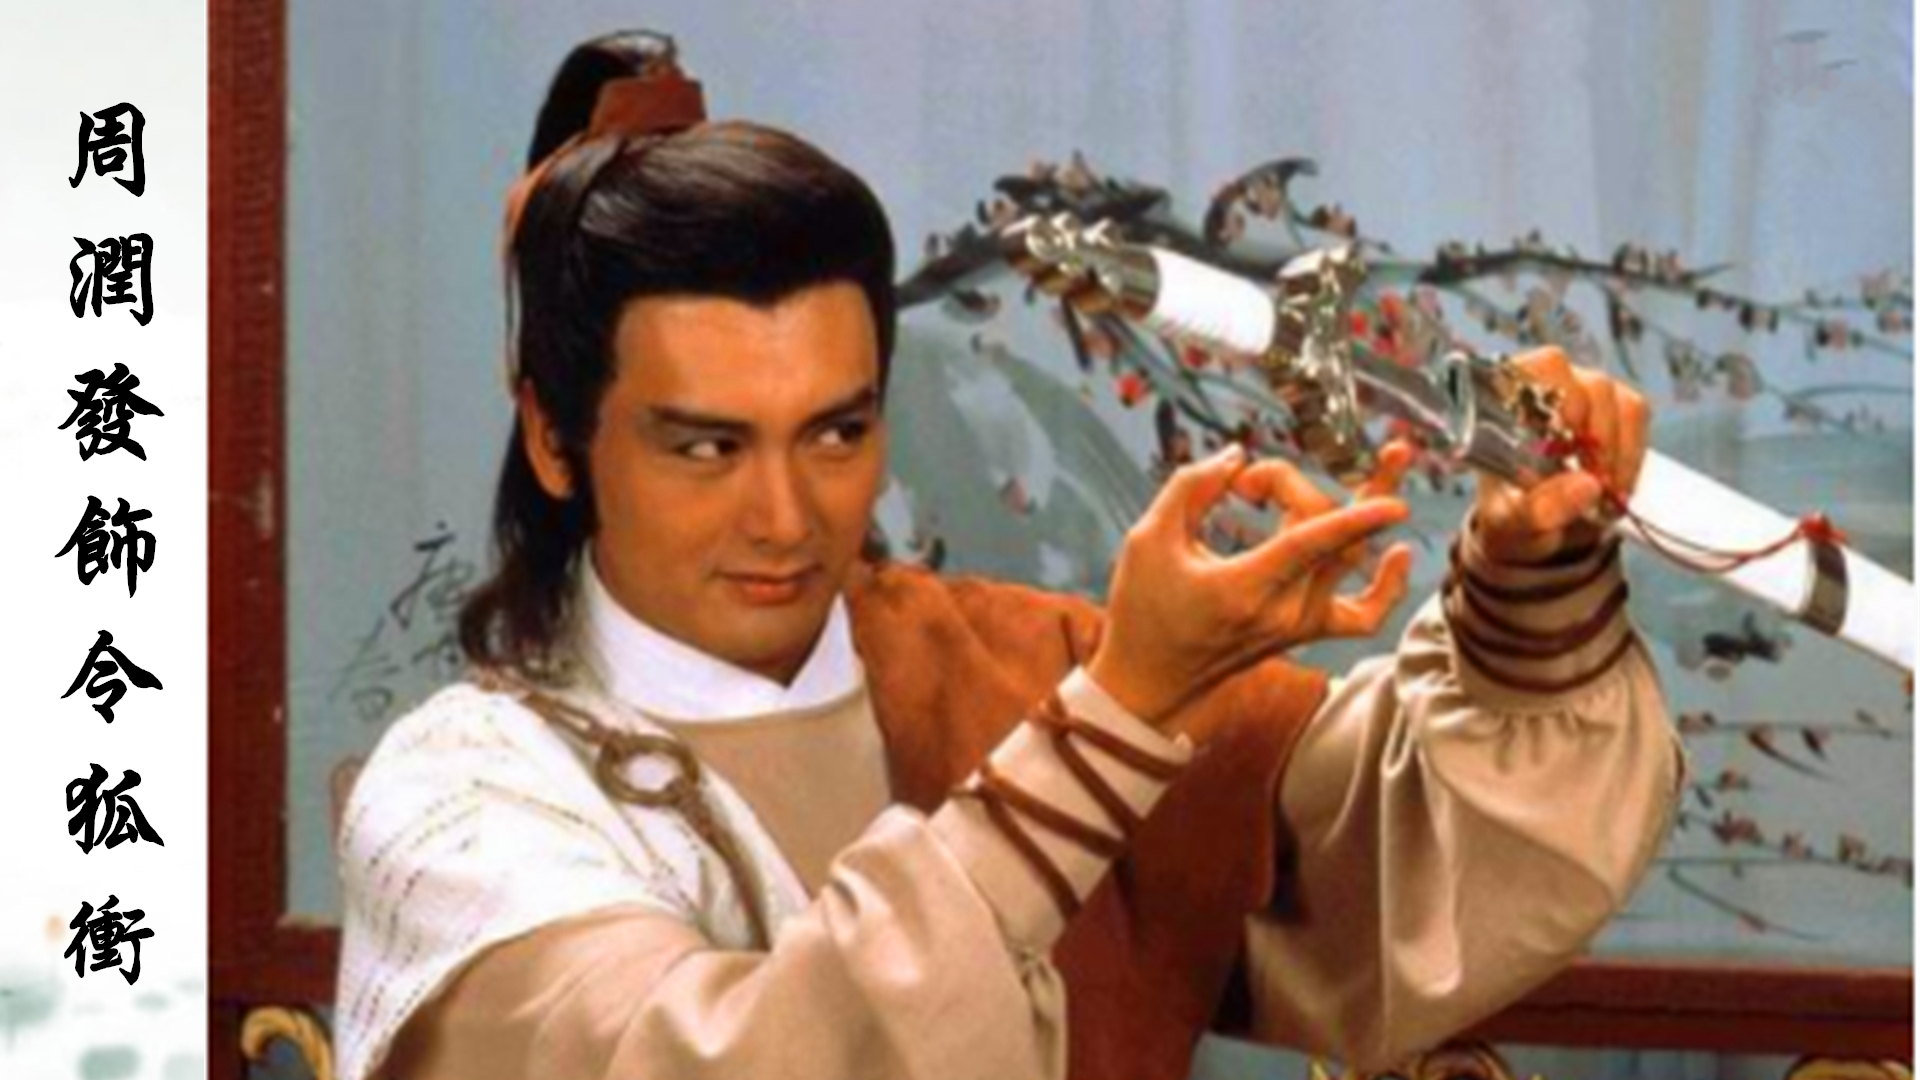 1984年周润发版《笑傲江湖》周润发饰令狐冲,也是最早的第一部,俗话说